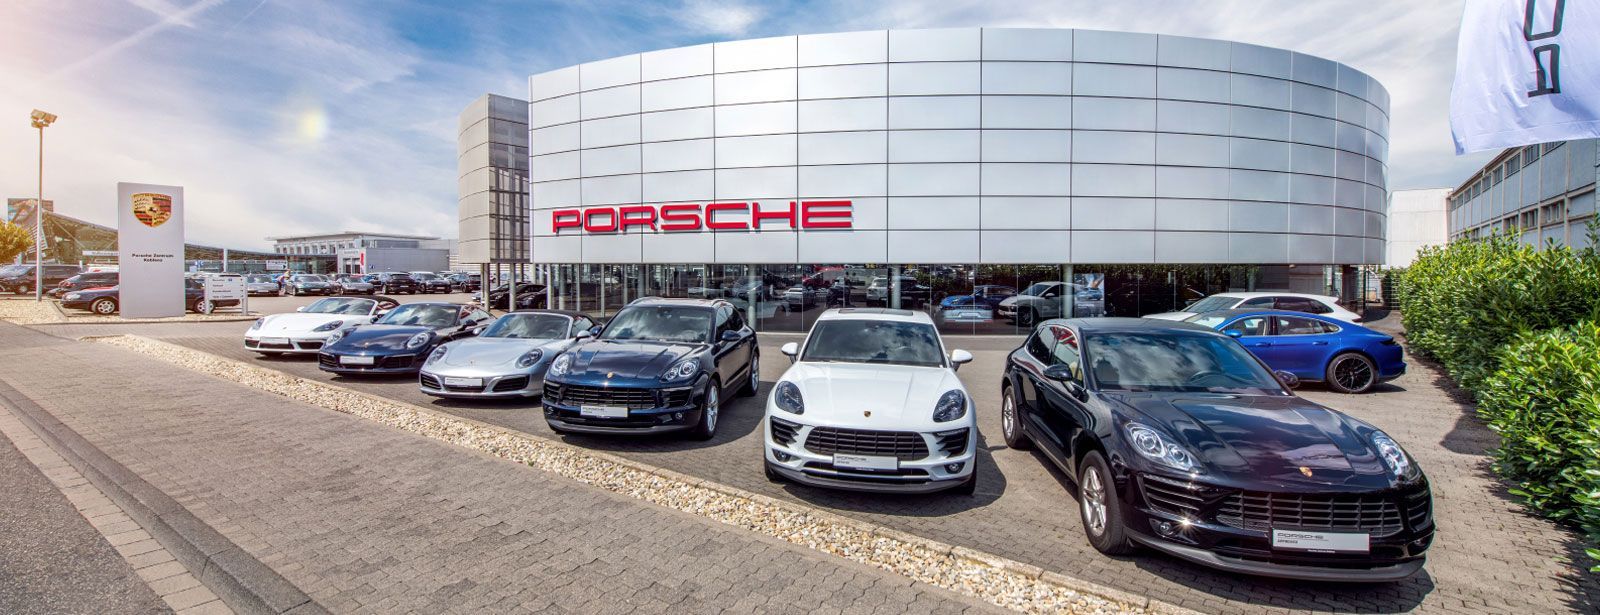 Porsche Zentrum Koblenz Herzlich Willkommen